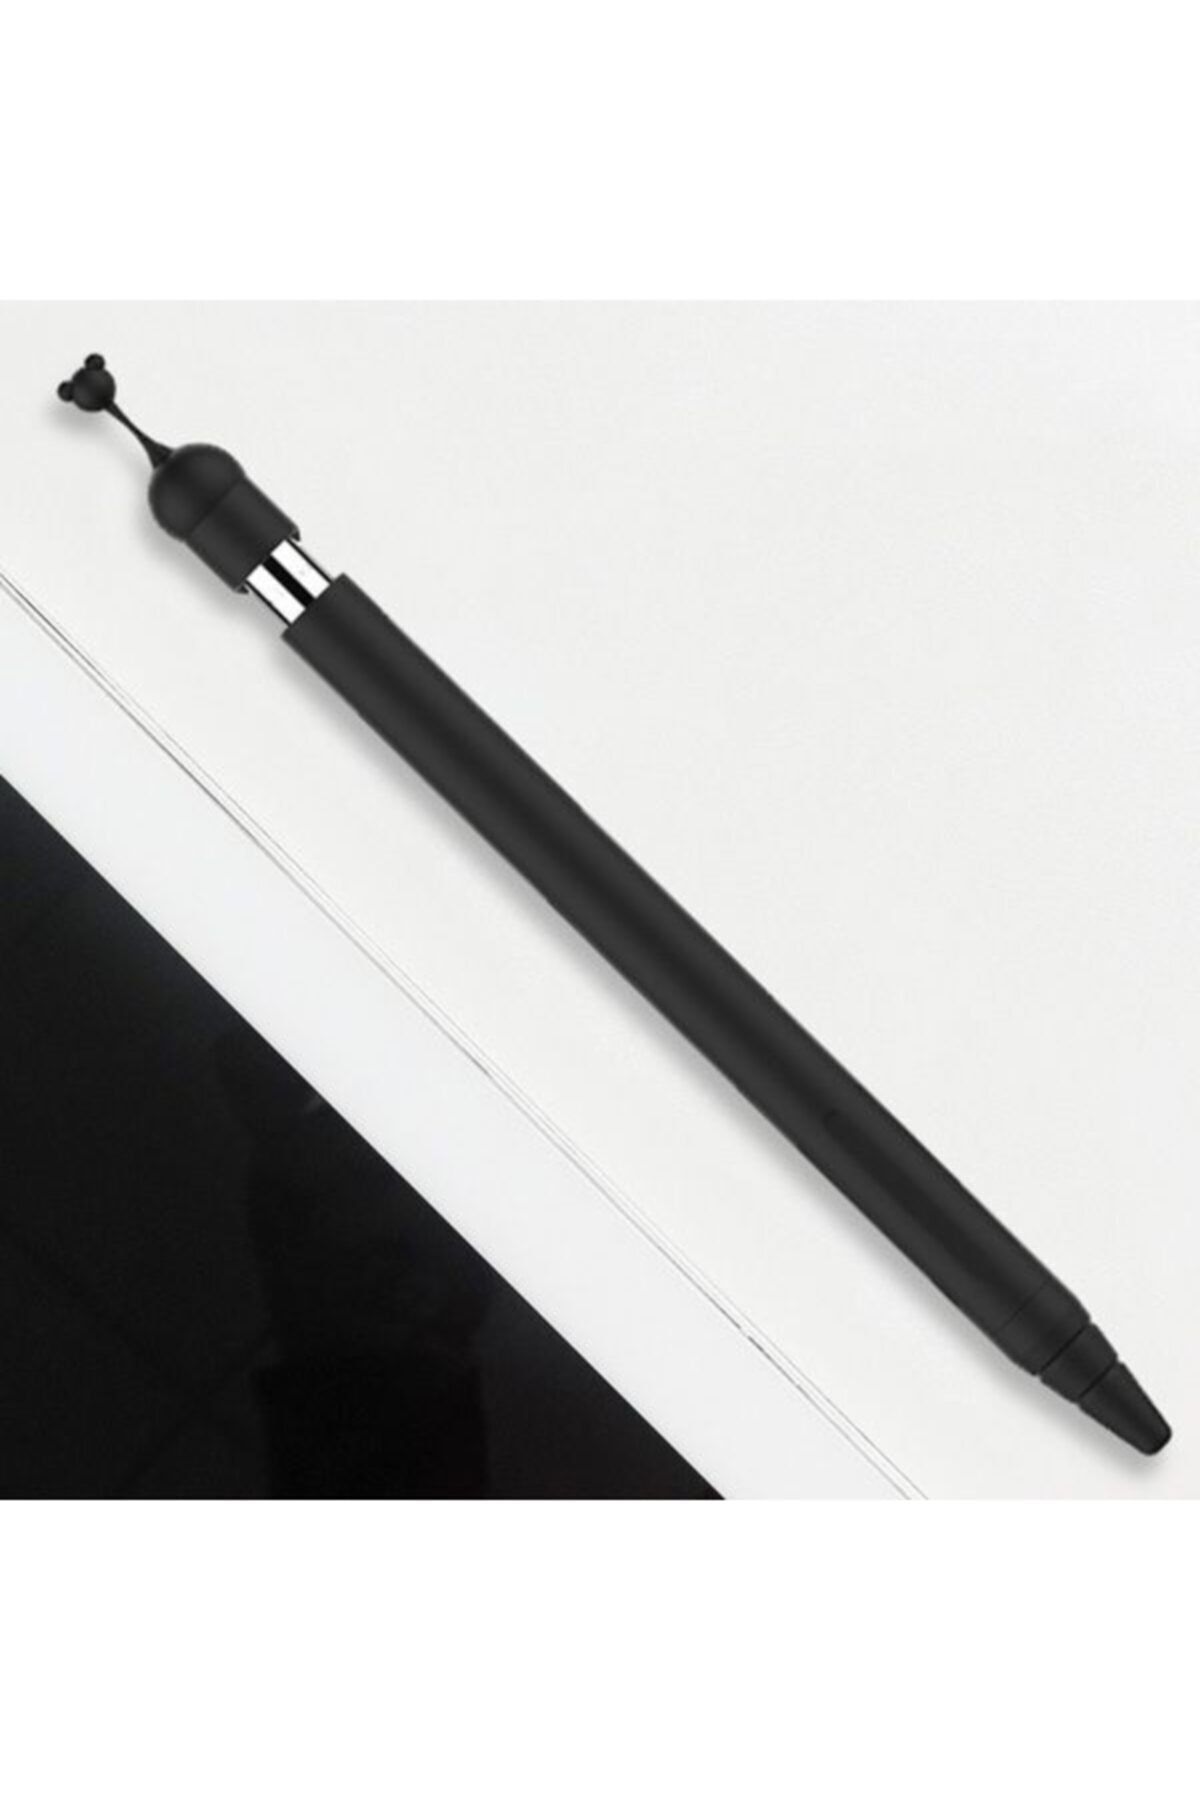 TeknoExpress Apple Pencil İçin Silikon Kılıf Koruyucu - Siyah